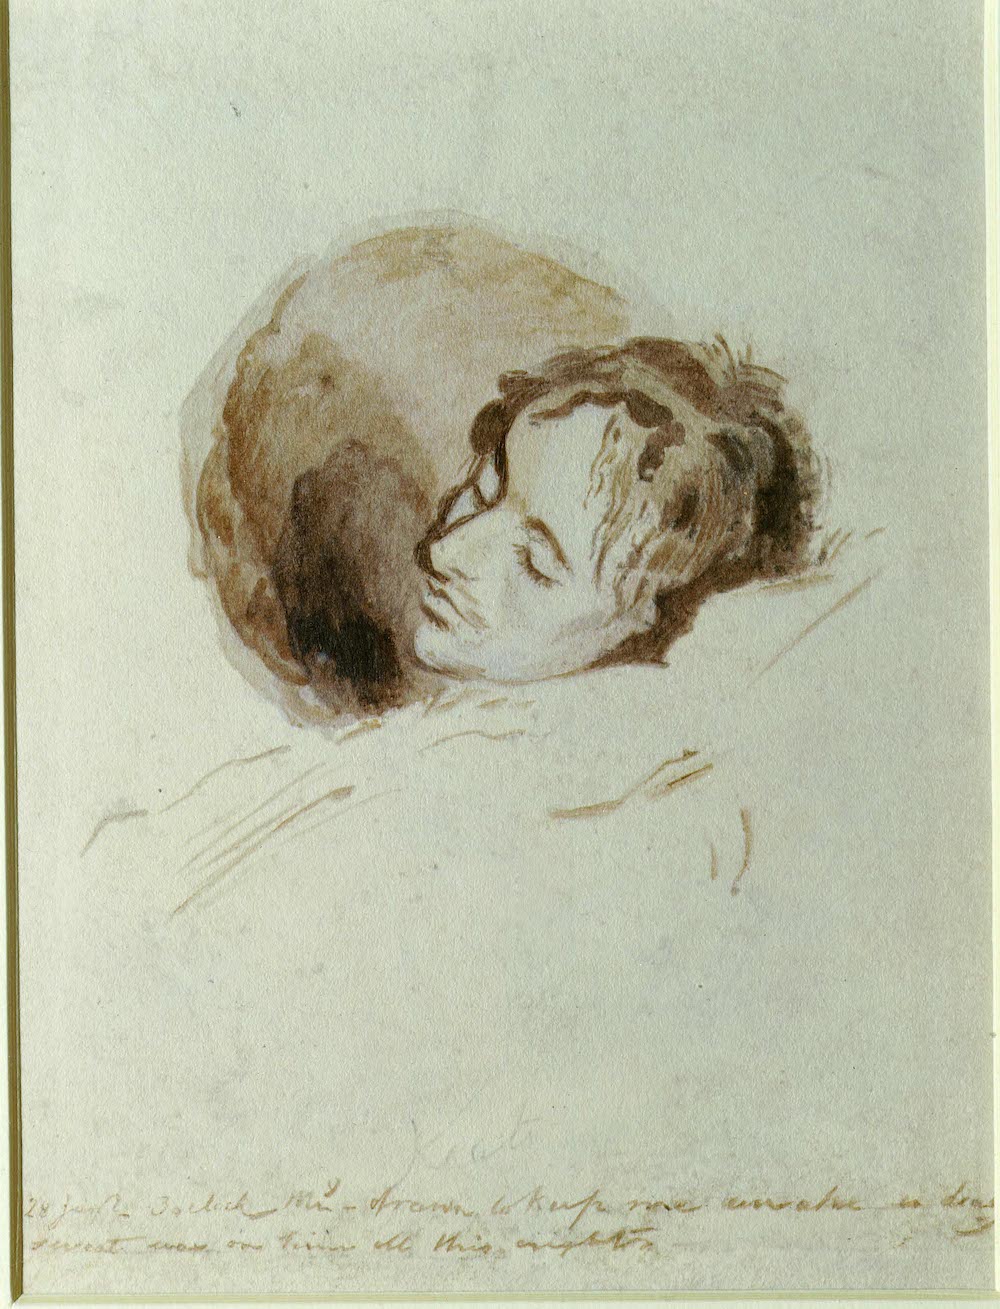 Figure 1: Joseph Severn, “Keats on His Death Bed,” 1821